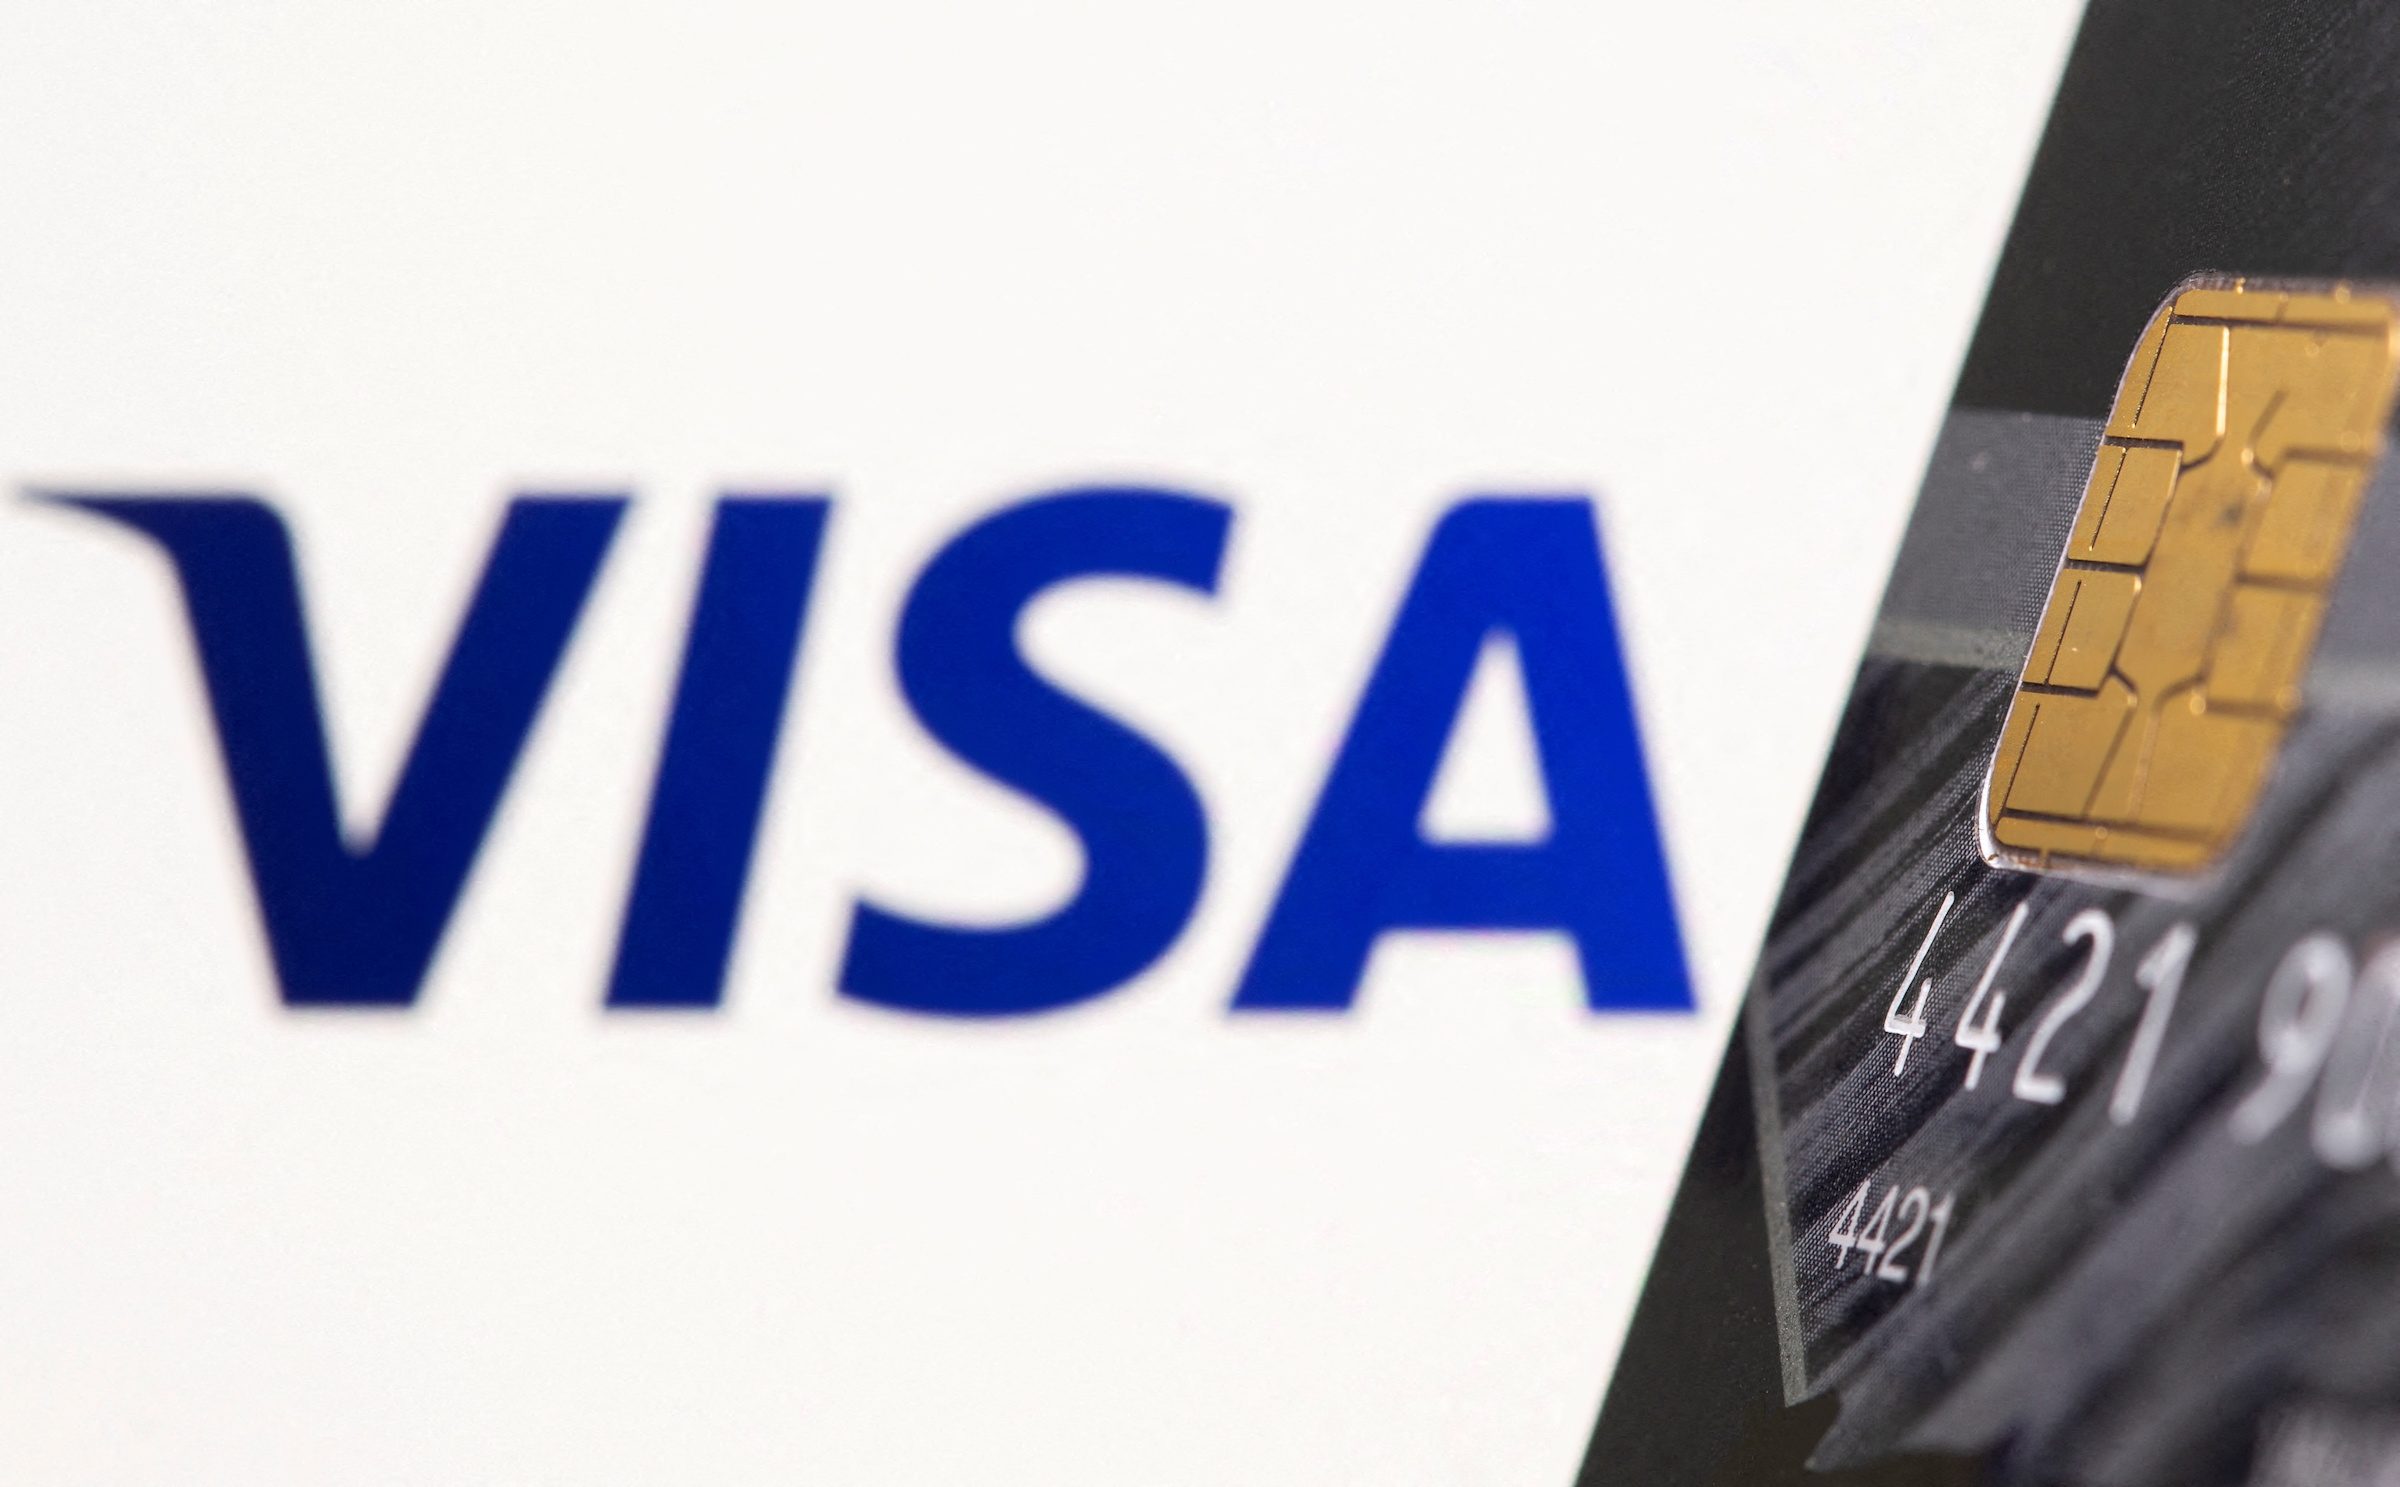 Visa, Mastercard suspend operations in Russia over Ukraine invasion